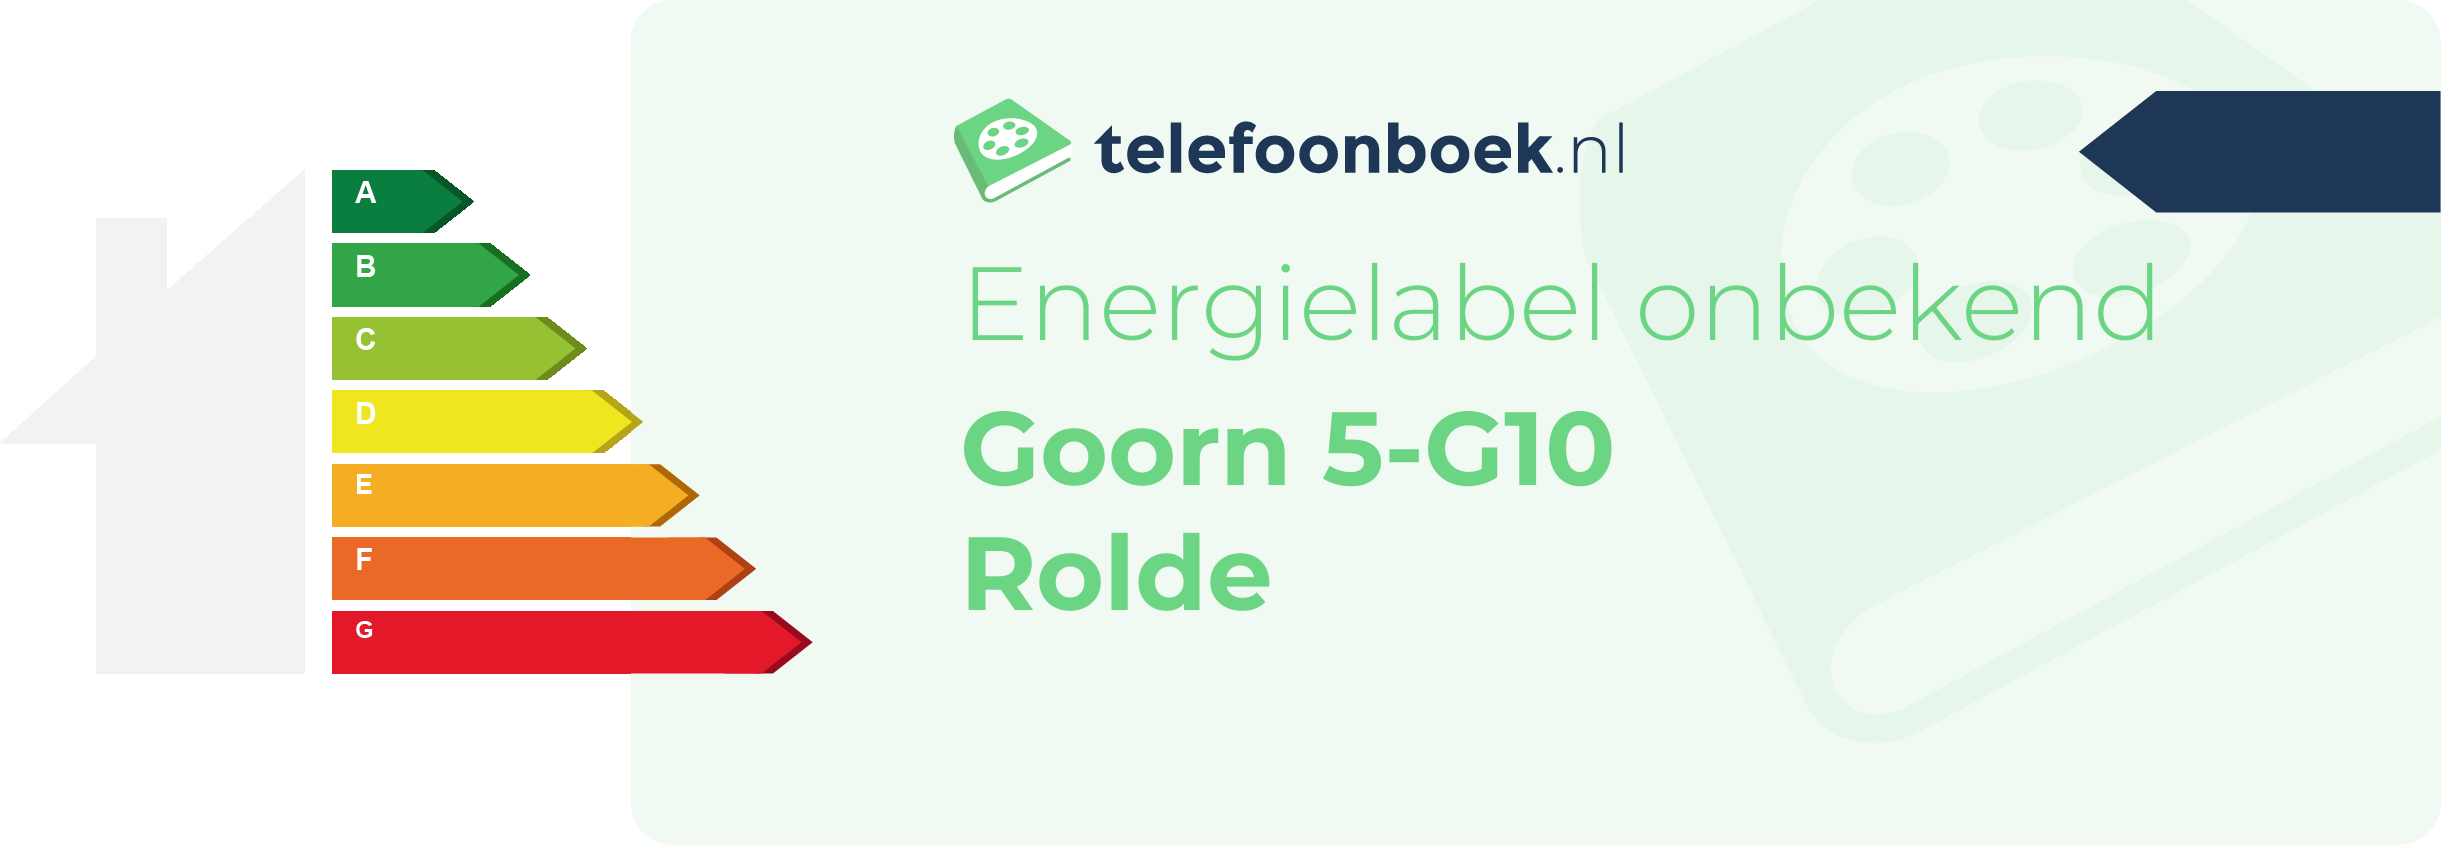 Energielabel Goorn 5-G10 Rolde